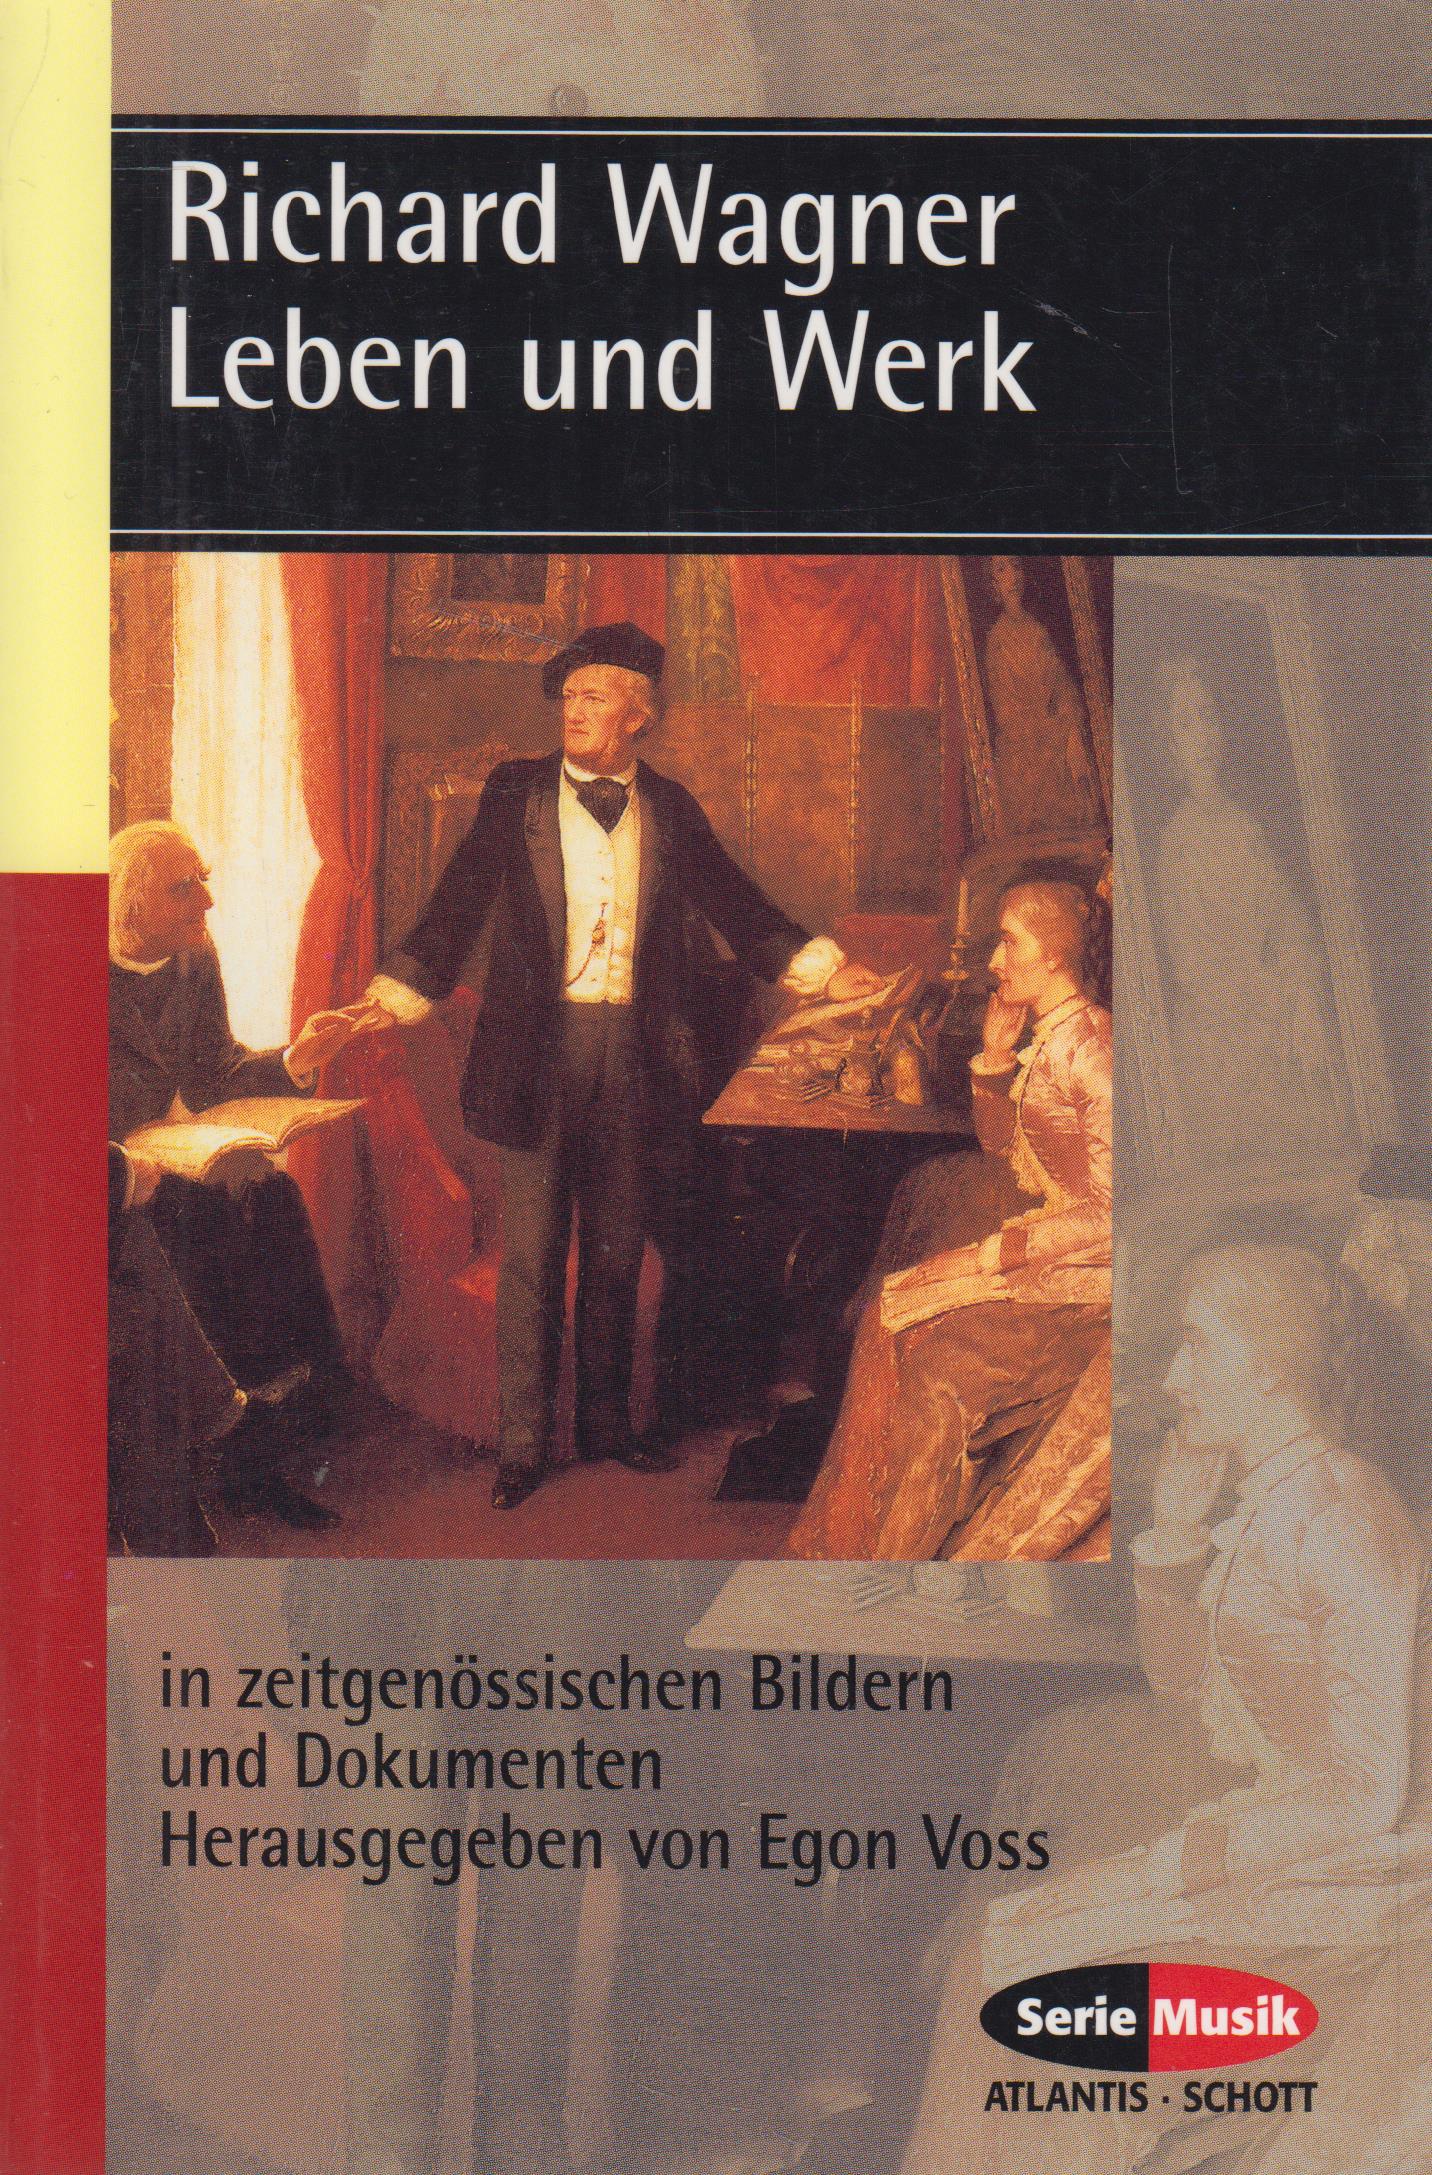 Richard Wagner Leben und Werk in zeitgenössischen Bildern und Dokumenten - Voss, Egon u.a. (Hrsg.)